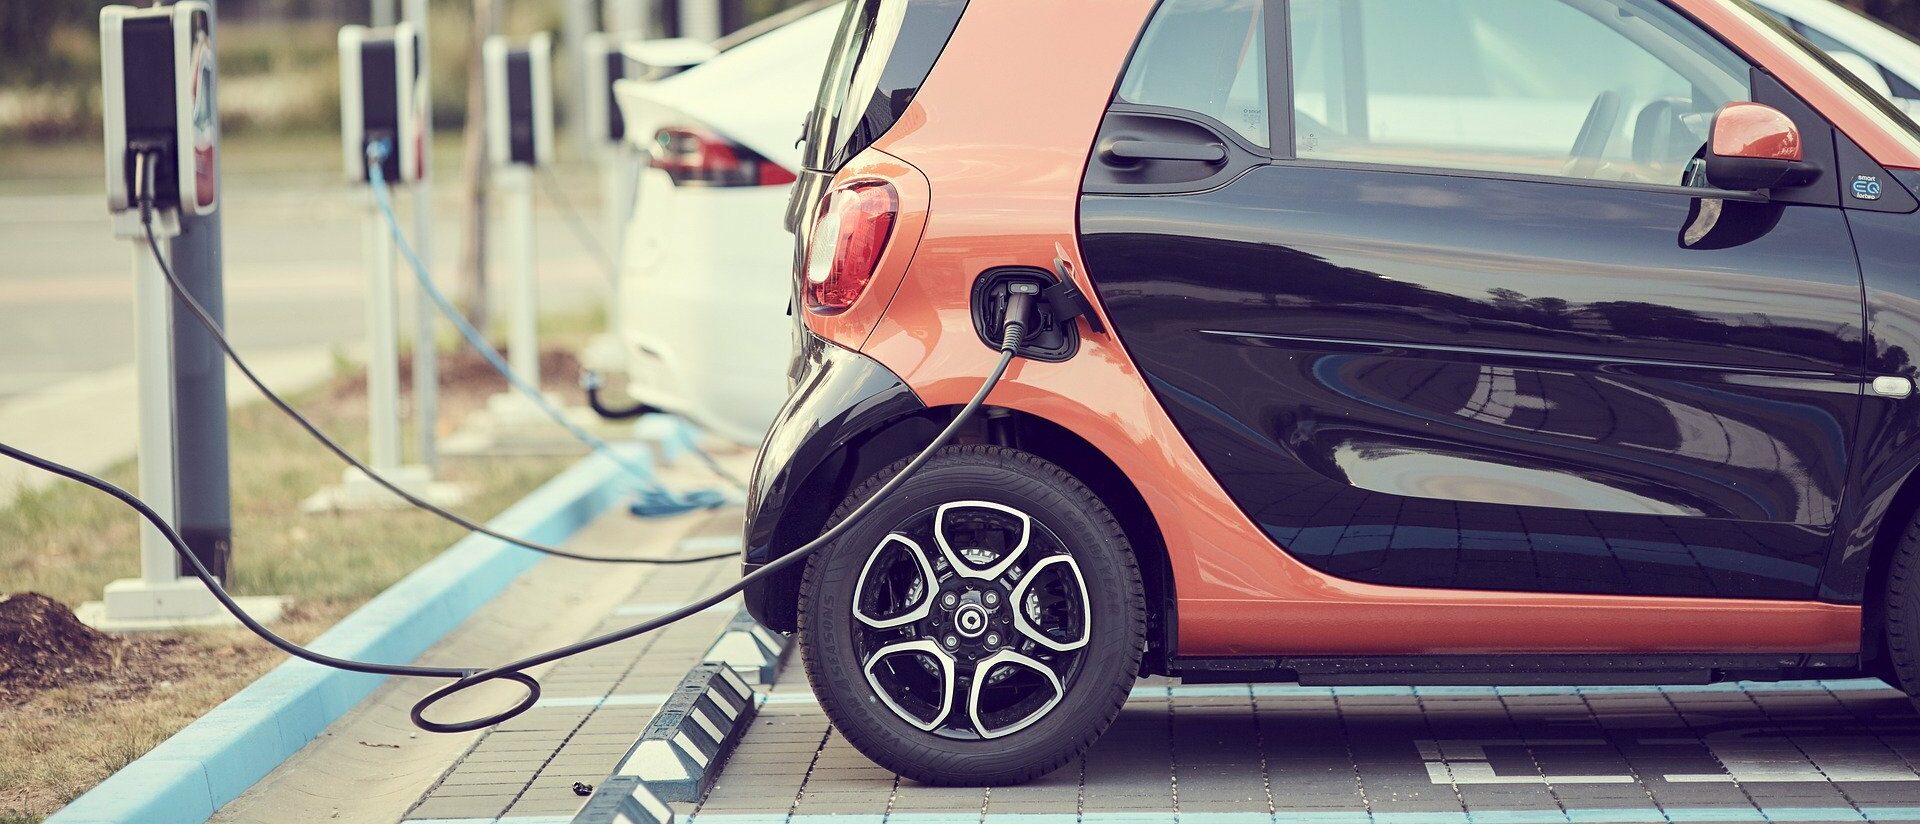 Les voitures électriques sont de plus en plus utilisées (photo: andreas160578 sur Pixabay)